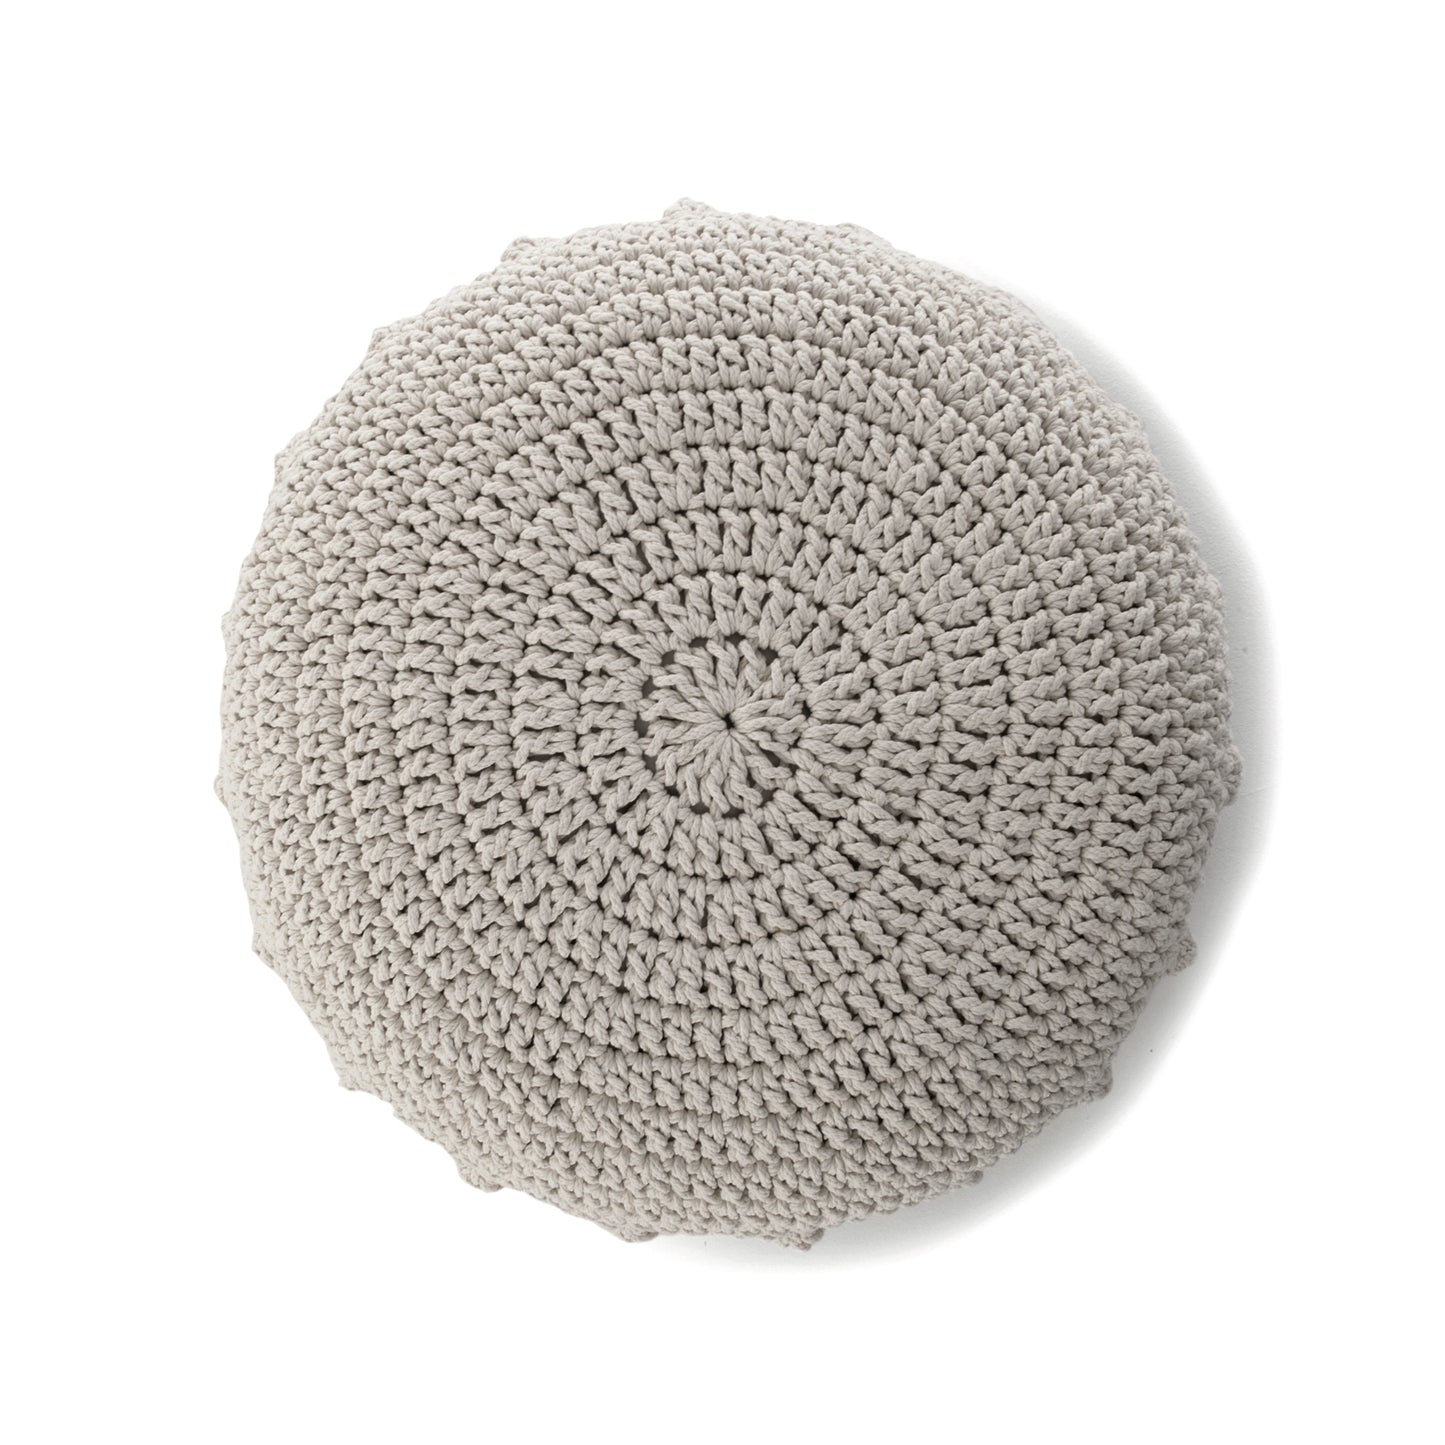 Puff Disco em crochê Fendi, com fio 100% algodão.  Fechamento com zíper, possibilitando a remoção da capa para lavagem.  Dimensões: Altura - 20cm; Diâmetro - 85cm. 